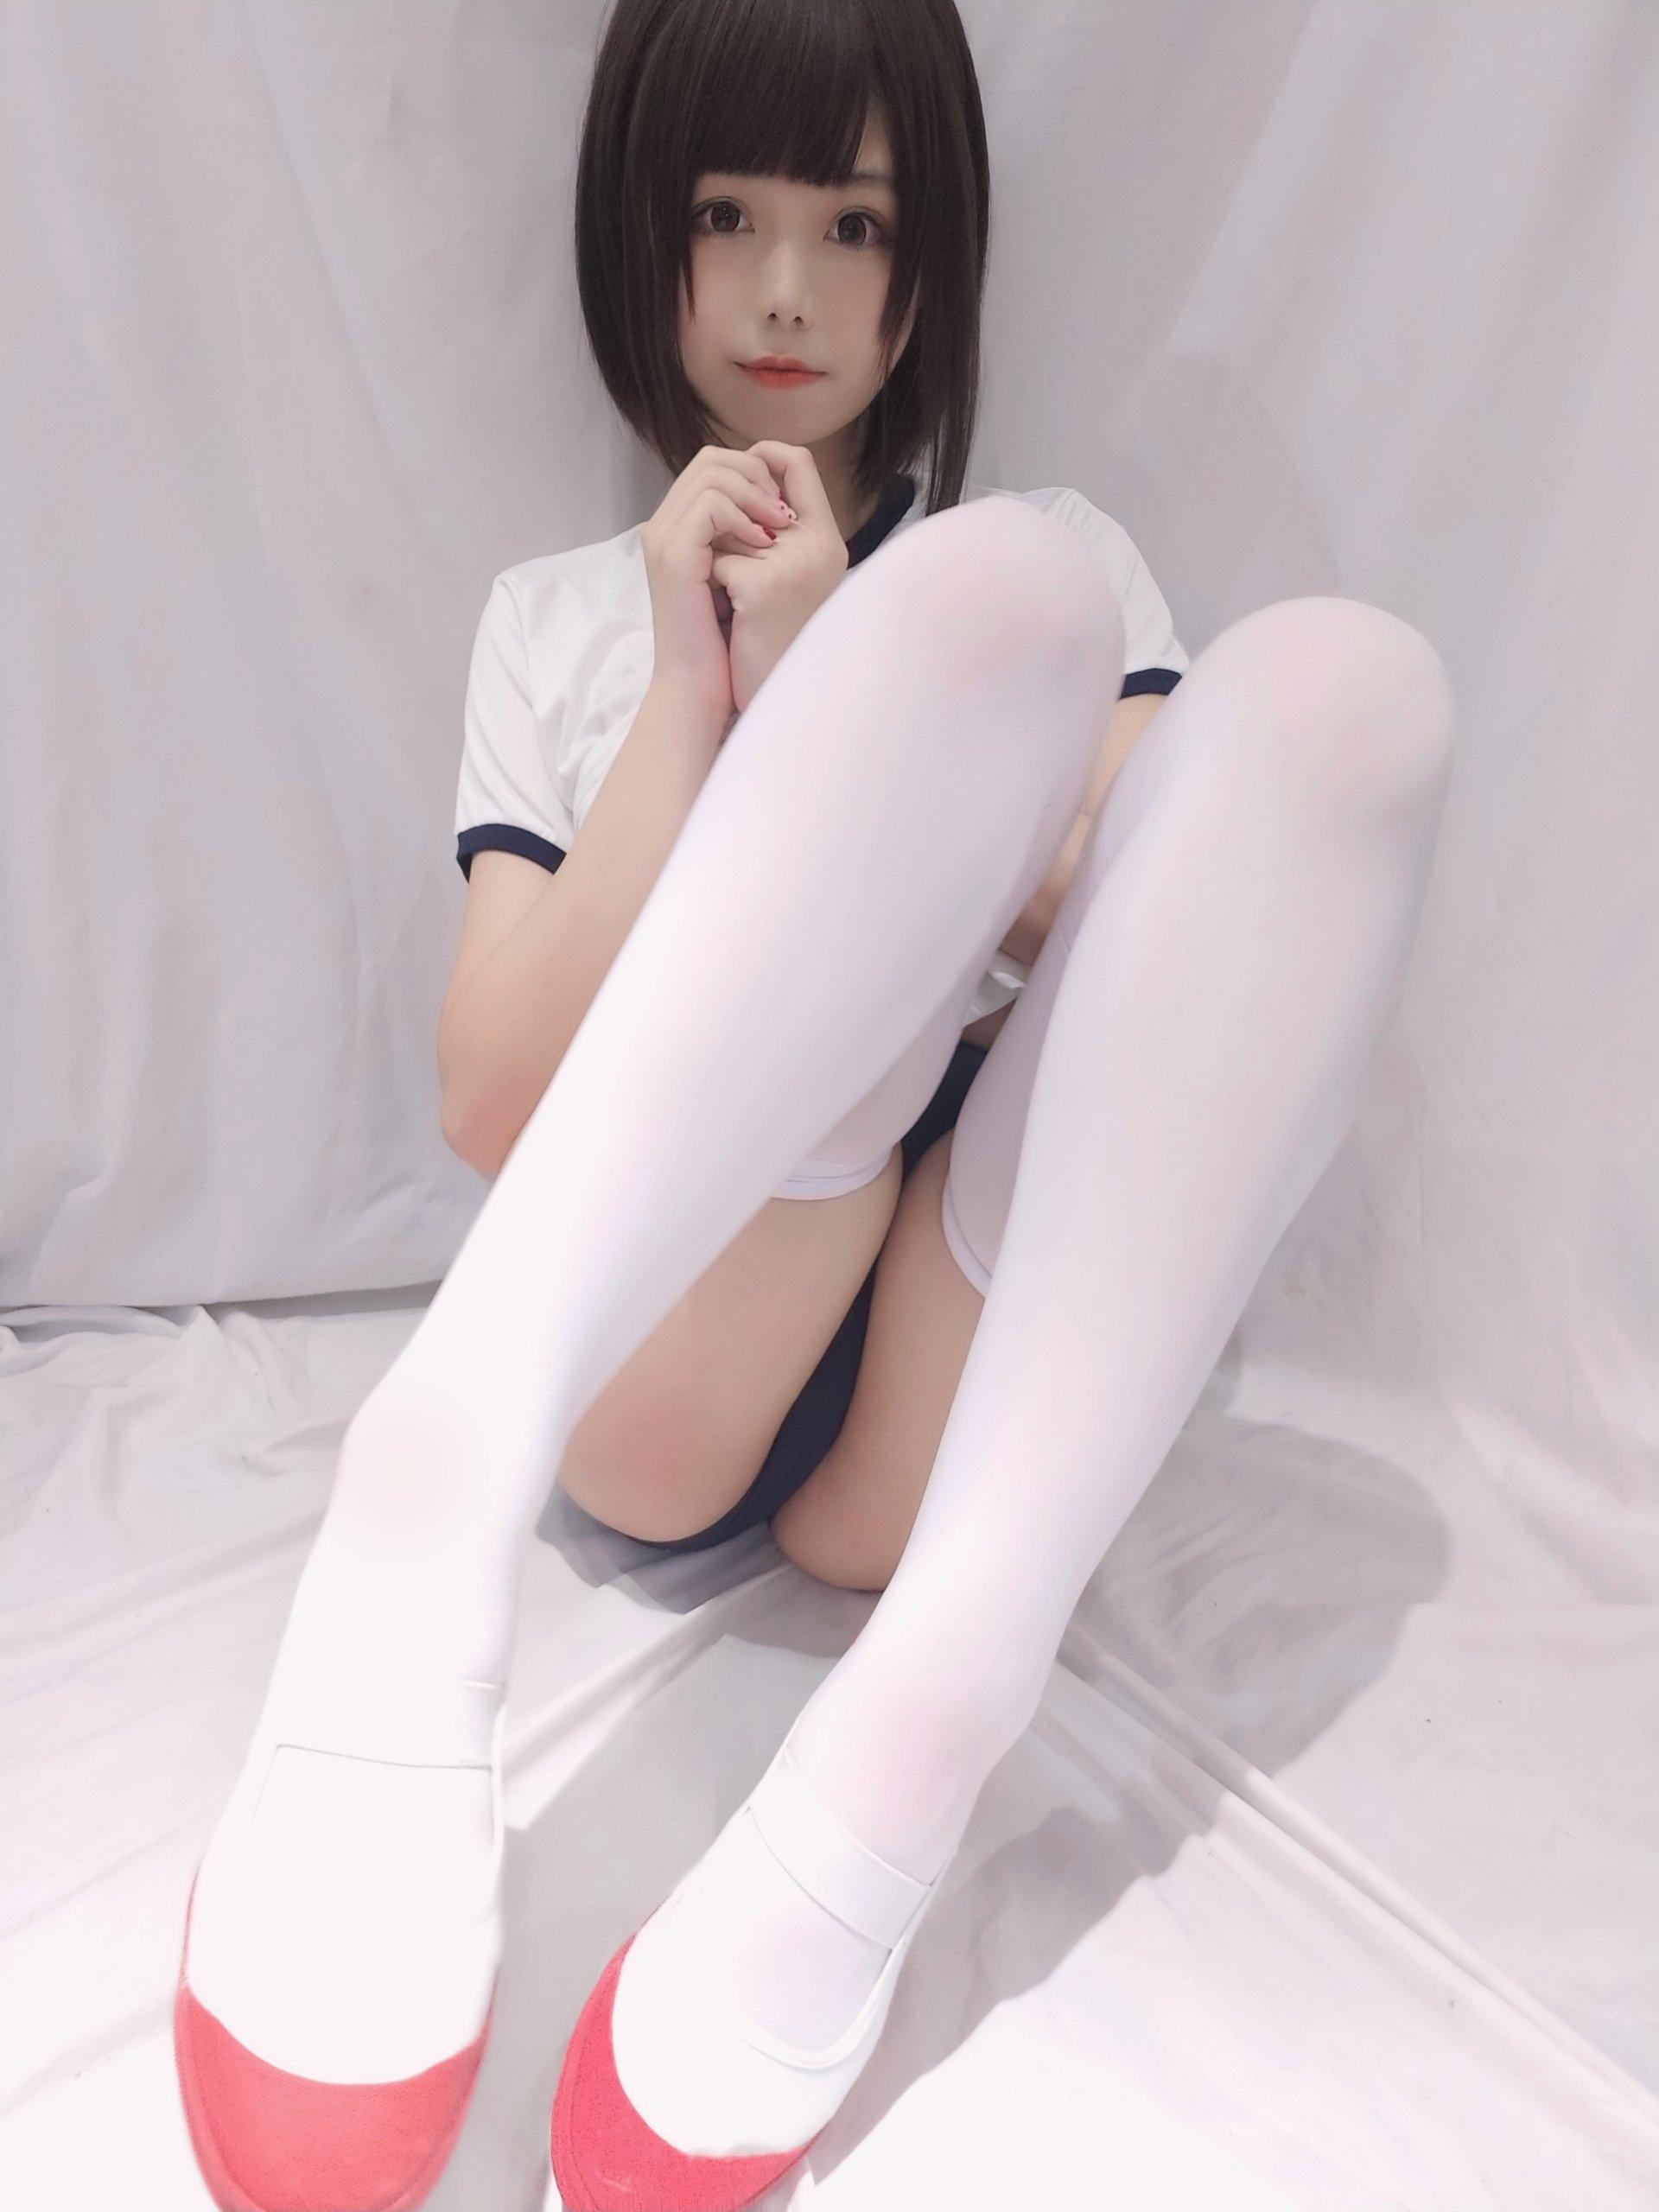 丰满萝莉少女 蜜汁猫裘 白色JK体操服加白色蕾丝内衣性感写真集,0016